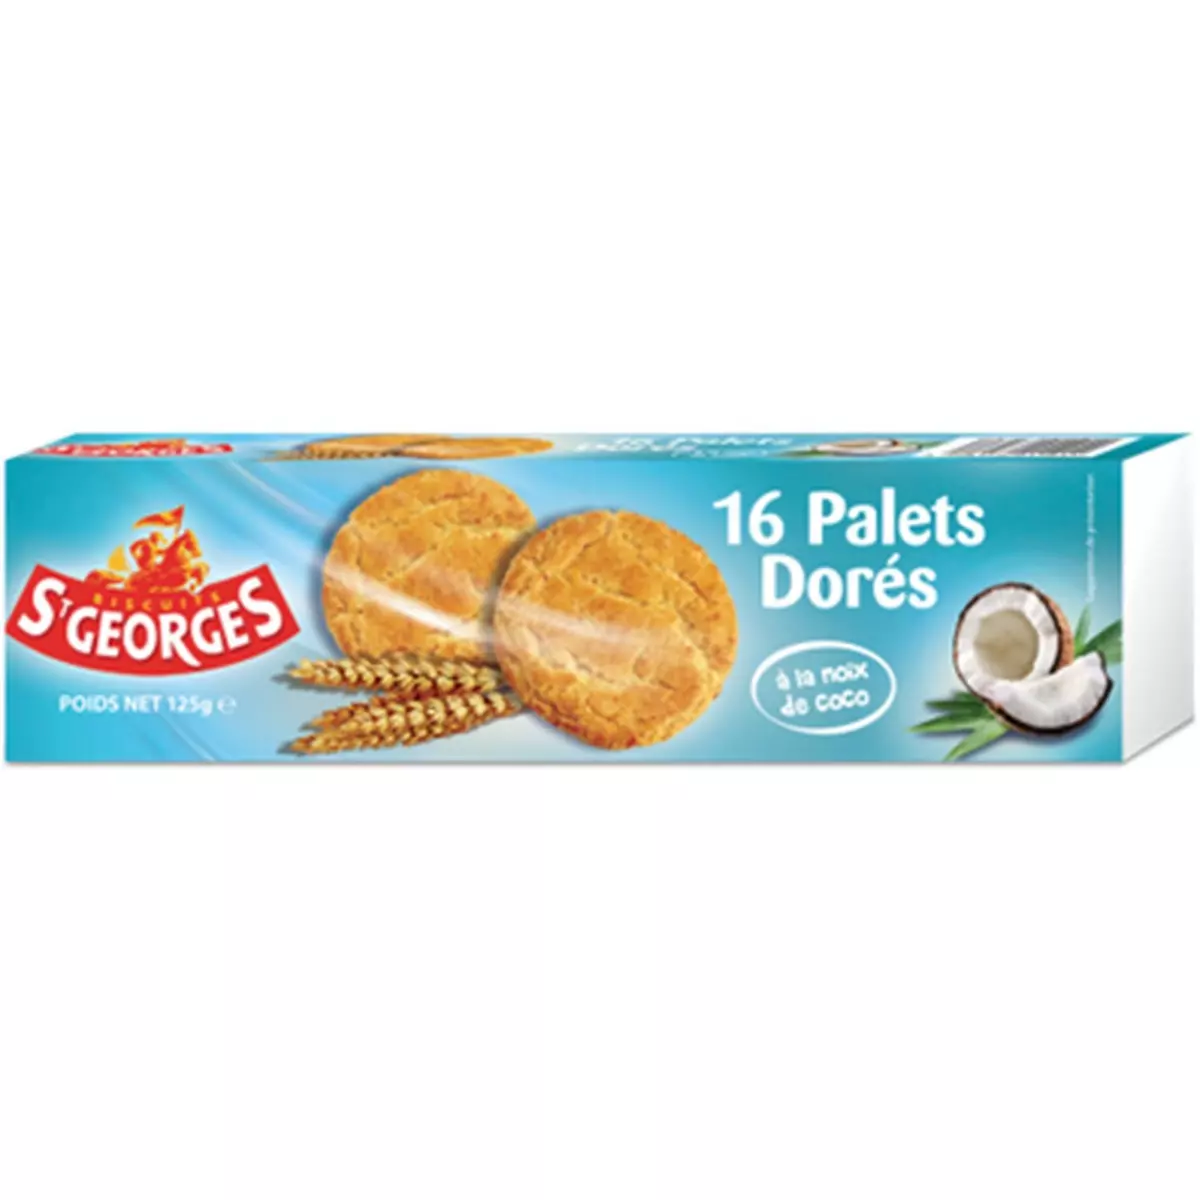 ST GEORGES Biscuits palets dorés à la noix de coco 16 biscuits 125g